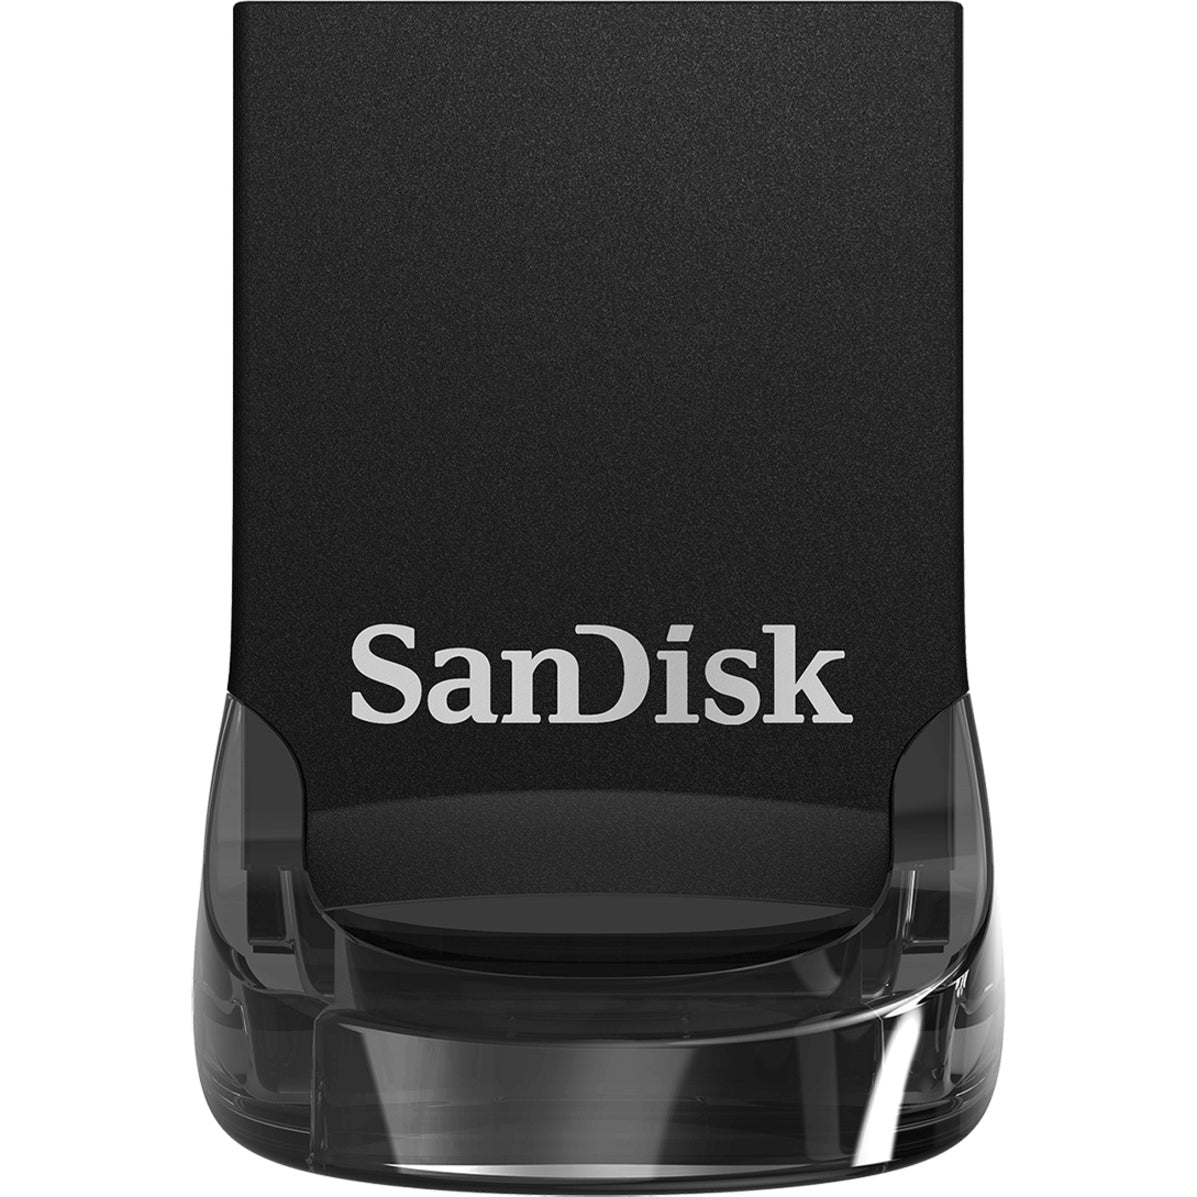 SanDisk SDCZ430-512G-A46 Ultra Fit USB 3.1 Flash Drive 512GB Solución de almacenamiento de datos de alta velocidad  Marca: SanDisk